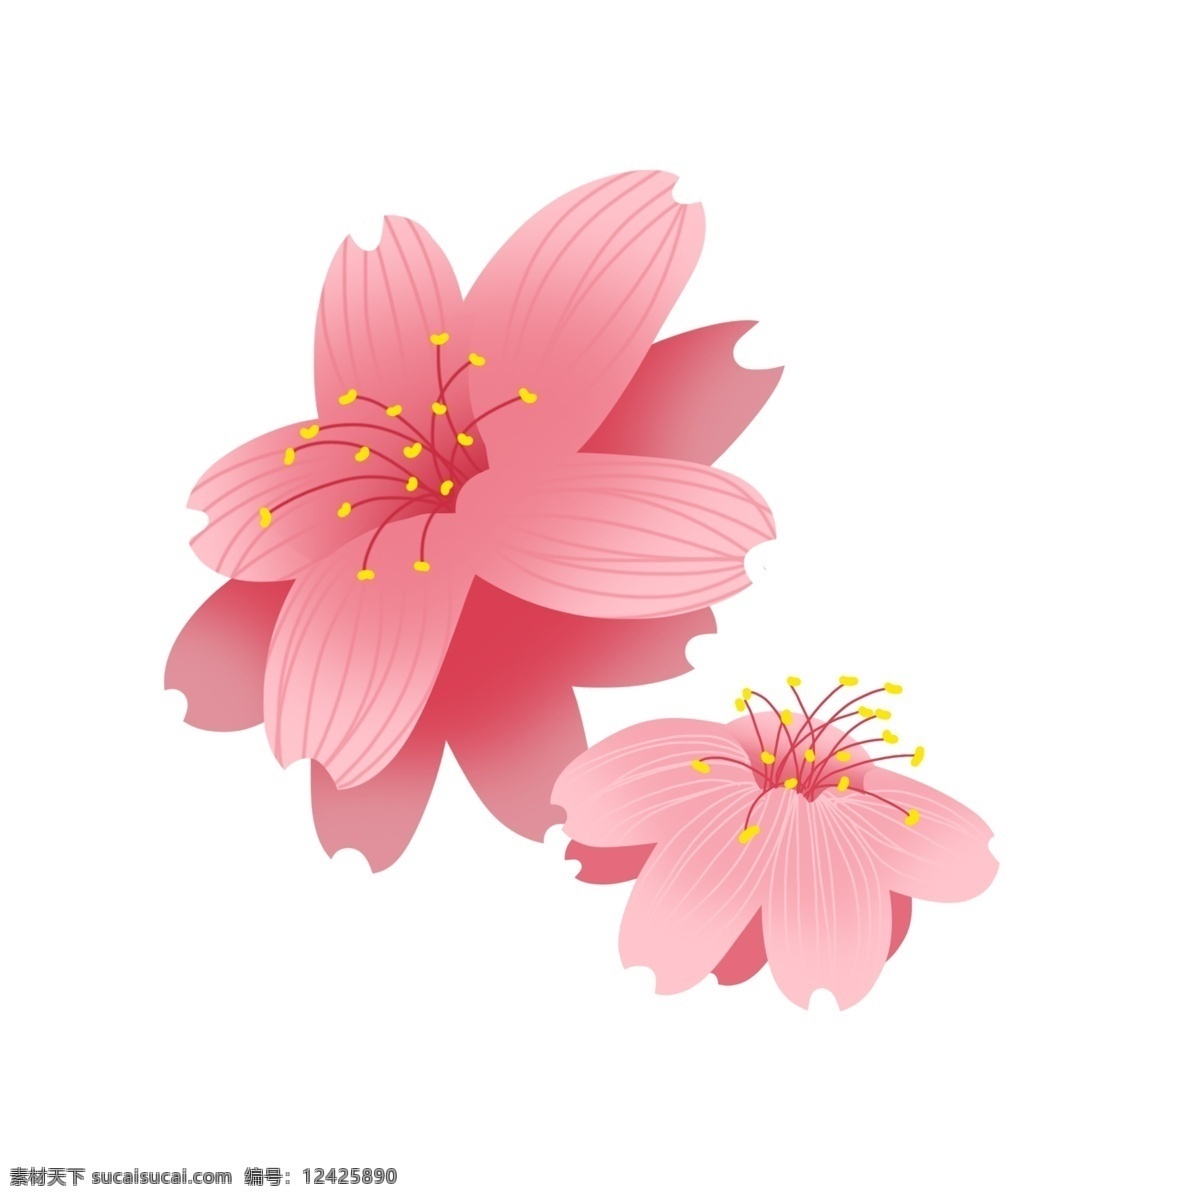 美丽 樱花 卡通 插画 美丽的樱花 卡通插画 樱花插画 花朵插画 鲜花 花瓣 花束 好看的樱花